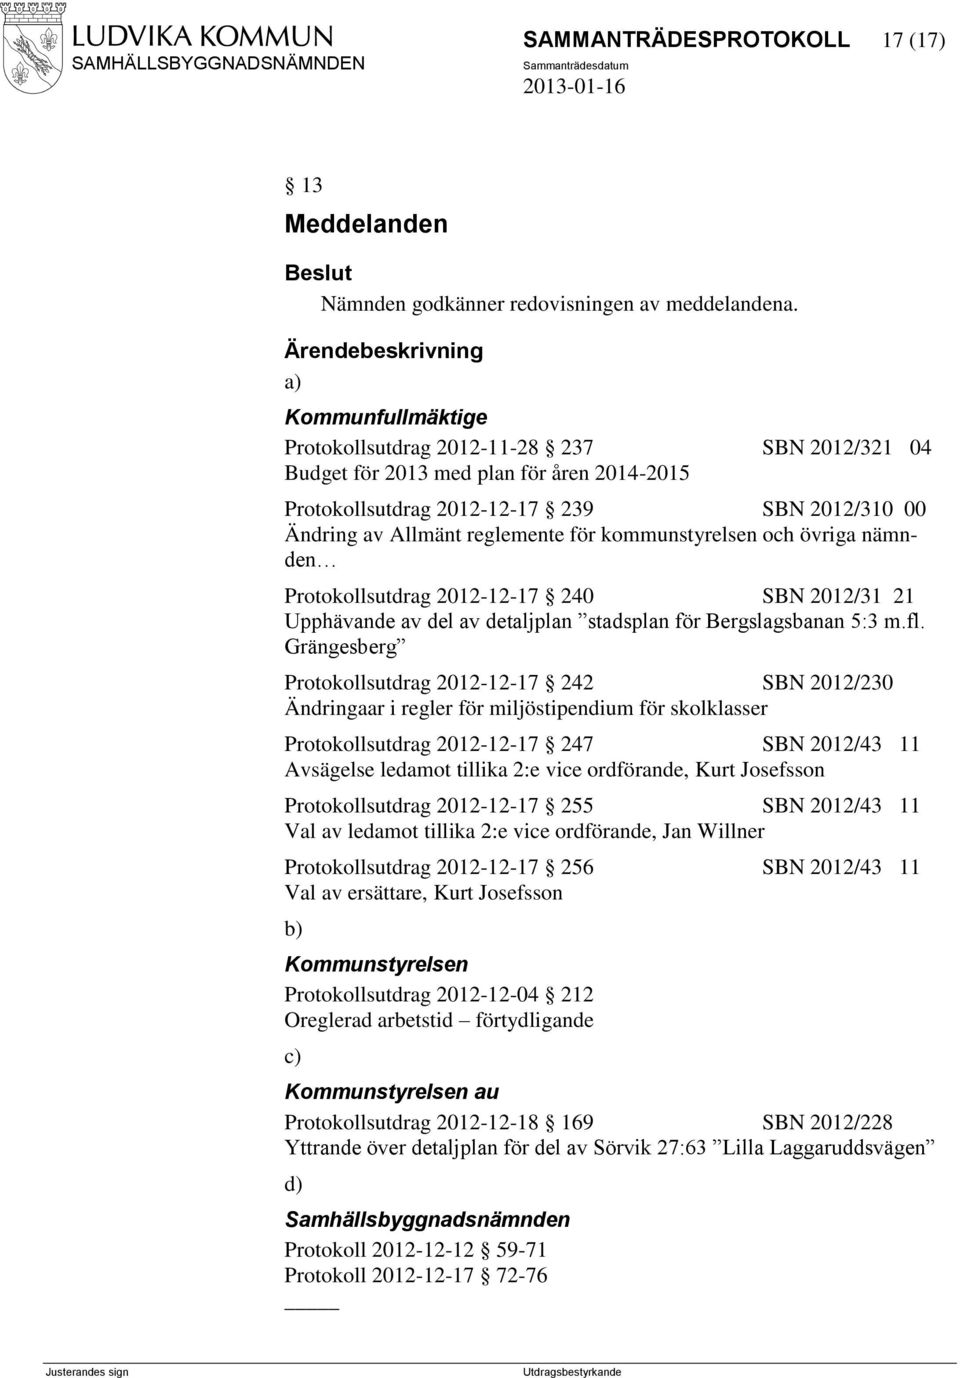 kommunstyrelsen och övriga nämnden Protokollsutdrag 2012-12-17 240 SBN 2012/31 21 Upphävande av del av detaljplan stadsplan för Bergslagsbanan 5:3 m.fl.